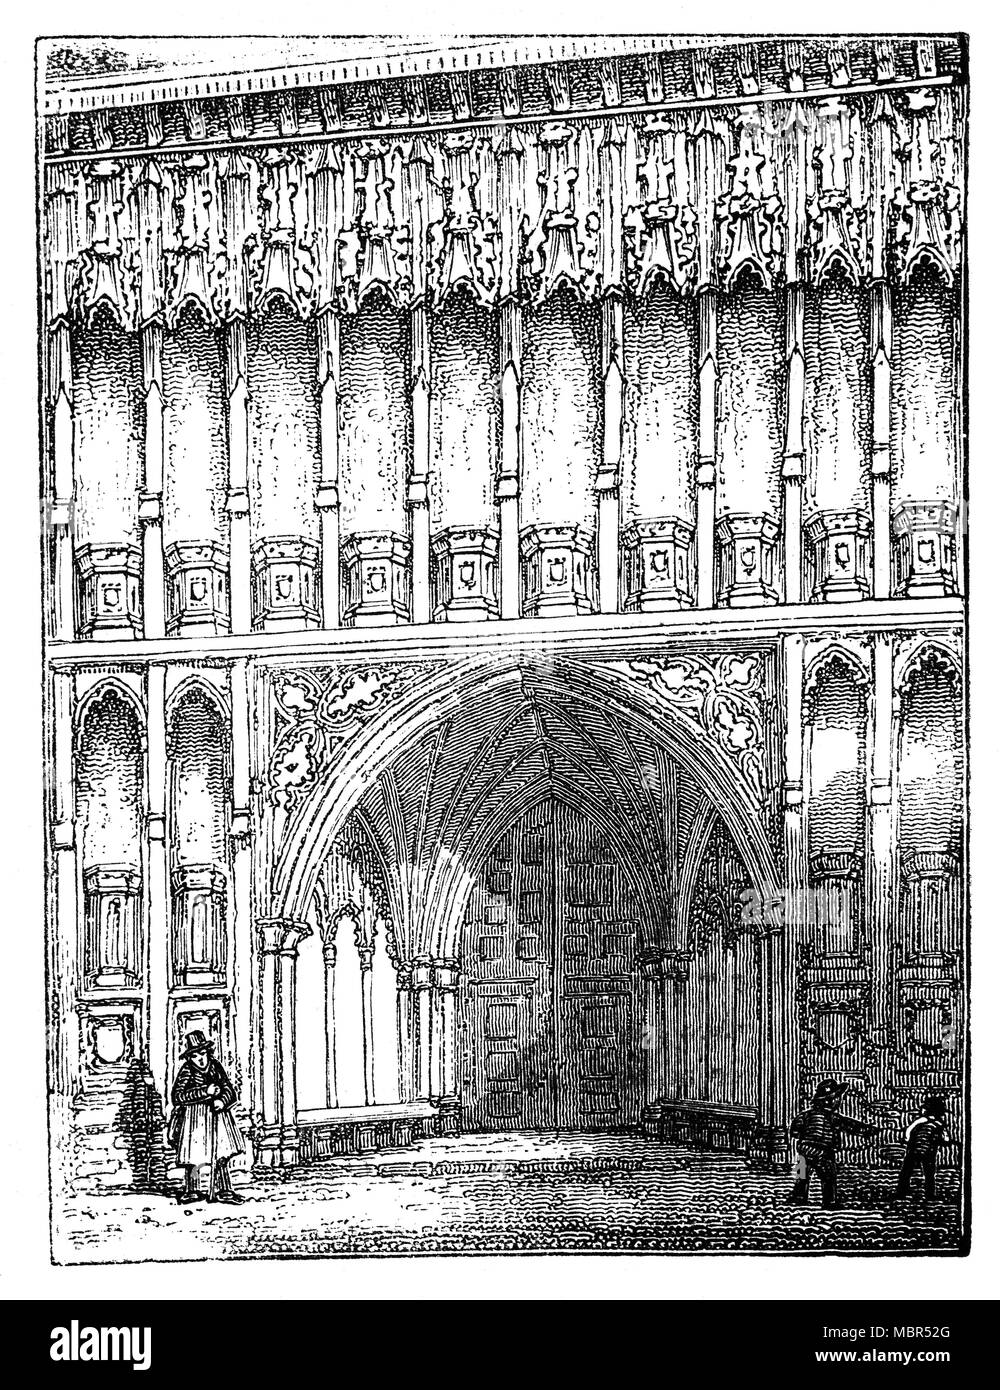 L'entrée ouest de l'abbaye de Westminster, officiellement intitulée la Collégiale de Saint Pierre à Westminster, une grande église abbatiale gothique, principalement dans la ville de Westminster, Londres, Angleterre. C'est l'endroit traditionnel de couronnement et de sépulture pour l'anglais et, plus tard, monarques britanniques. Entre 1540 et 1556, l'abbaye avait le statut d'une cathédrale. Depuis 1560, le bâtiment n'est plus une abbaye ou une cathédrale, au lieu d'avoir le statut d'une église d'Angleterre 'Royal'-une église particulière responsable directement au souverain. Banque D'Images